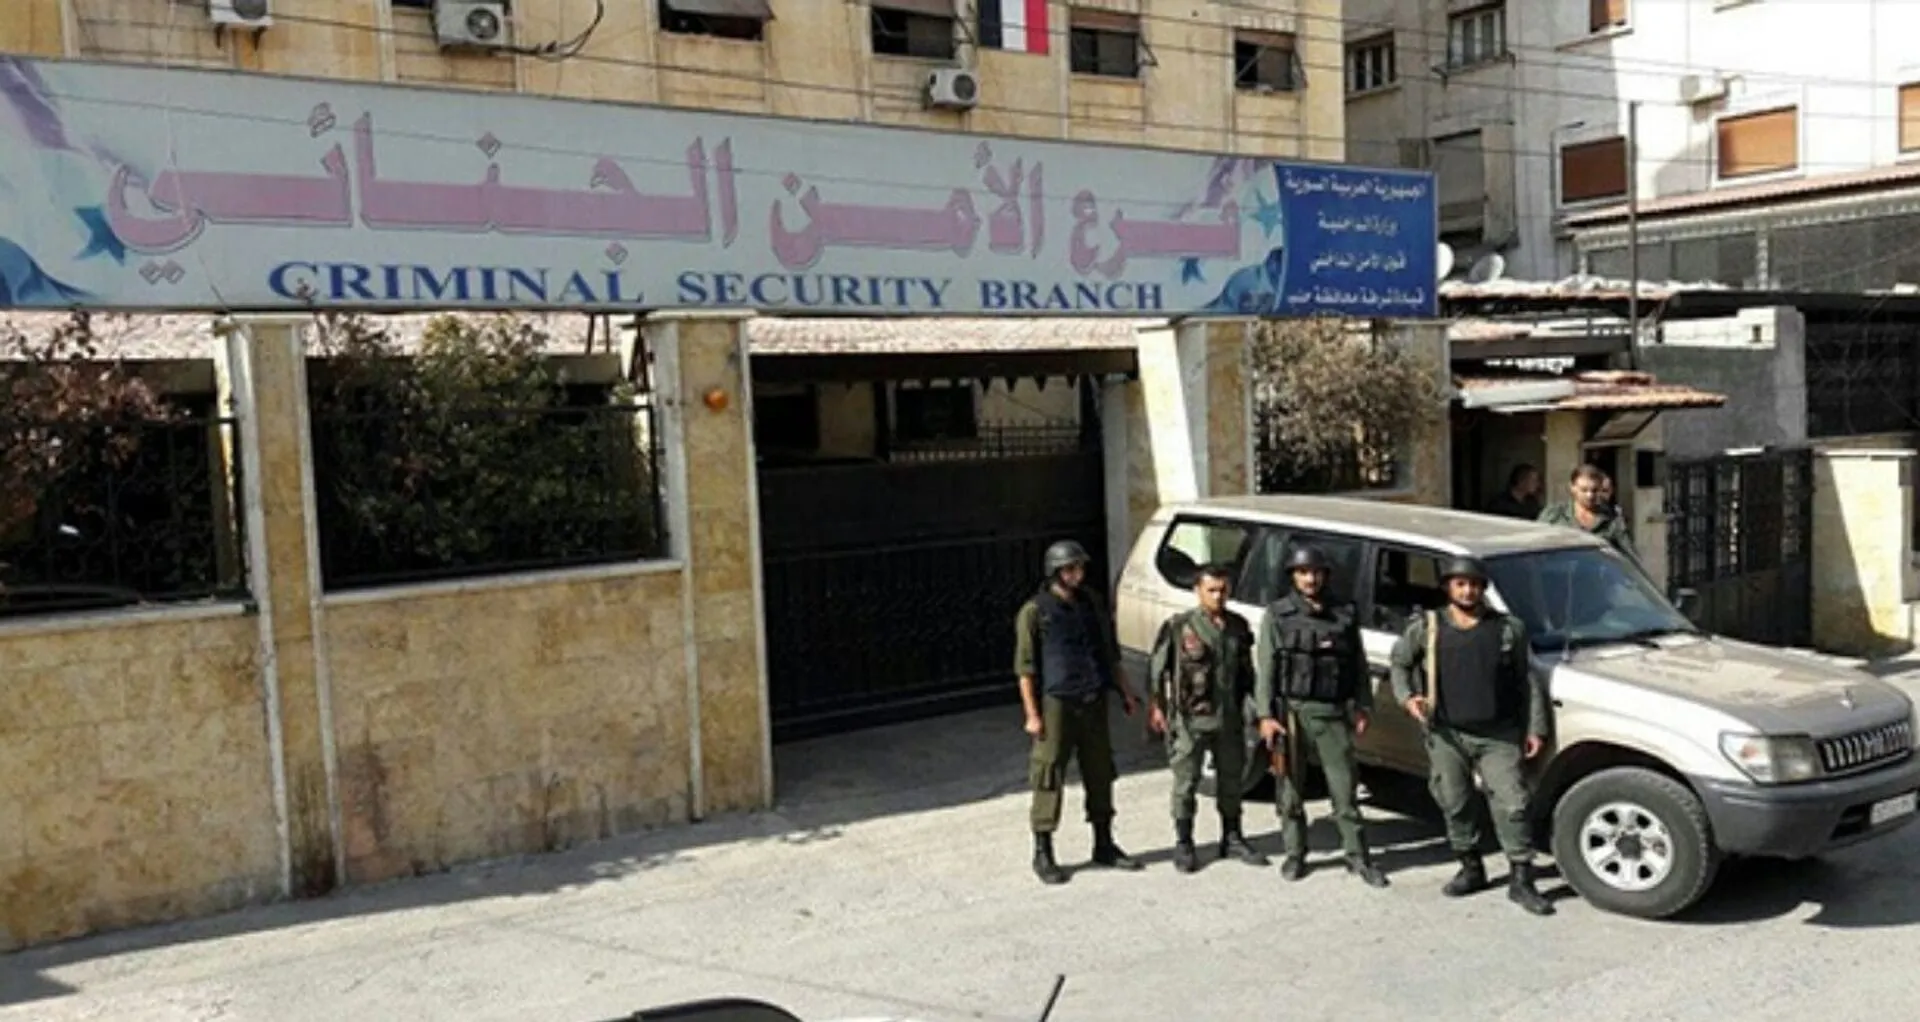 النظام يعتقل العشرات خلال أيام في دمشق بتهمة التعامل بغير الليرة